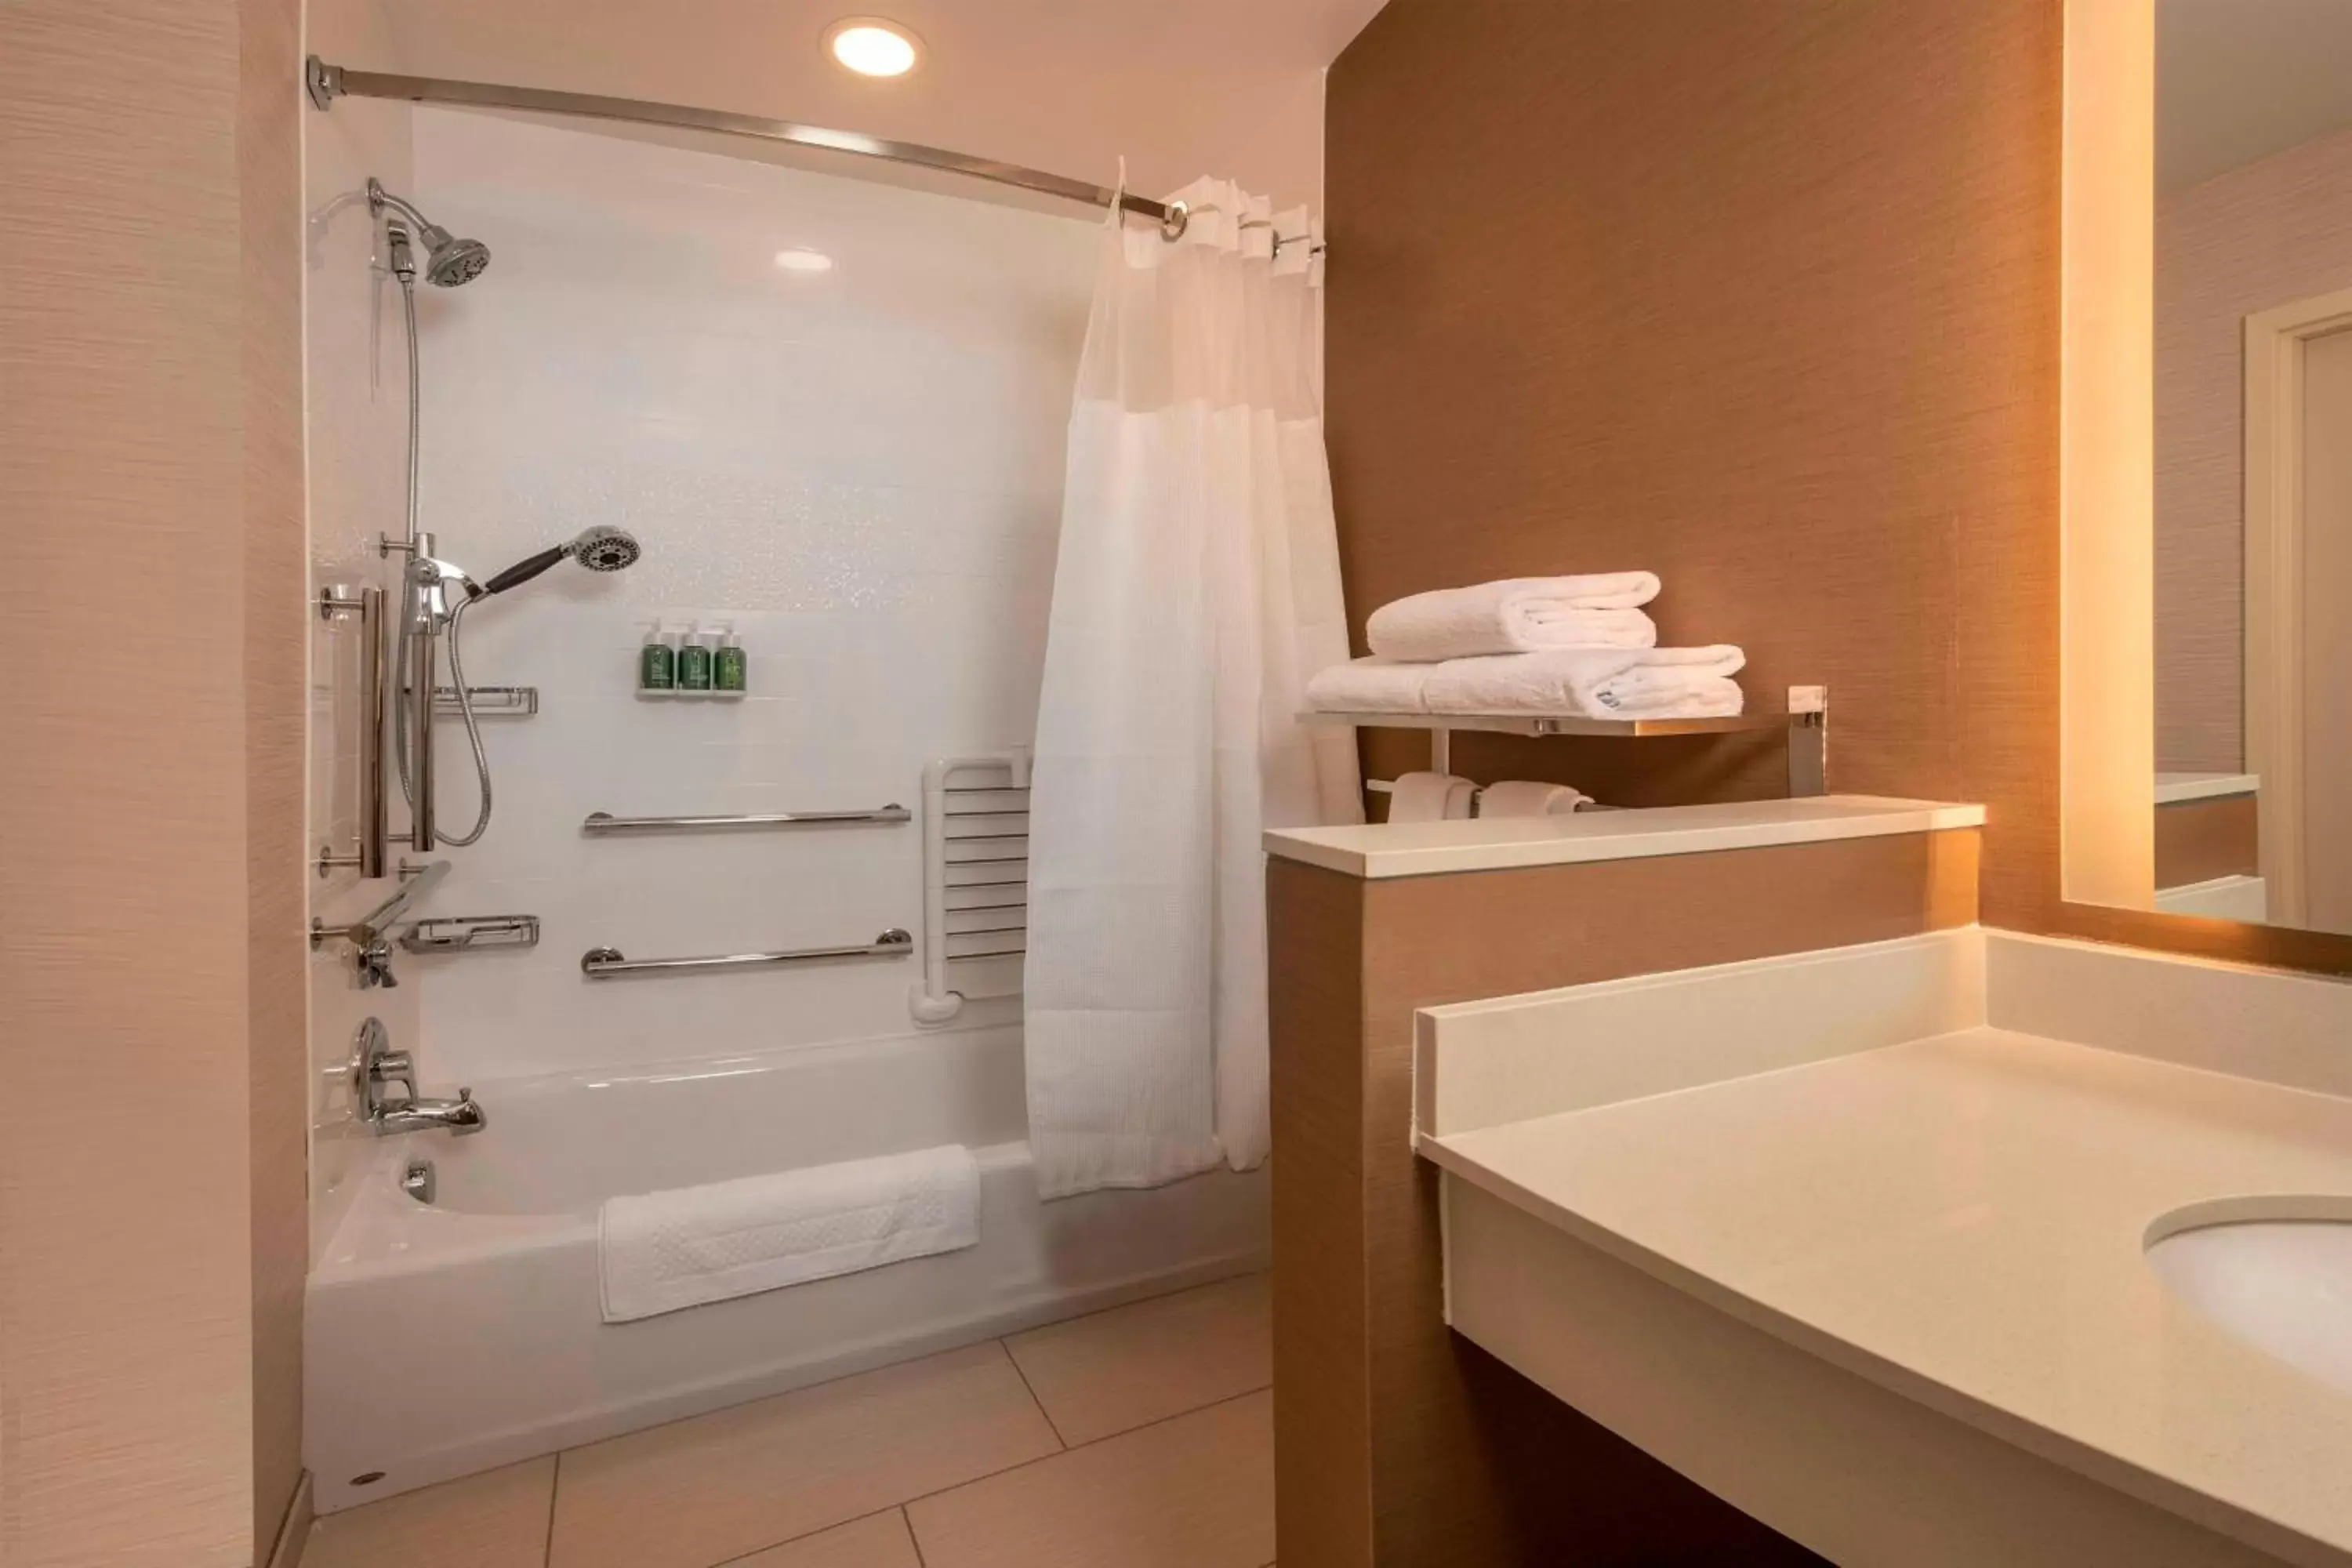 Bathroom in Fairfield Inn & Suites by Marriott Harrisburg International Airport